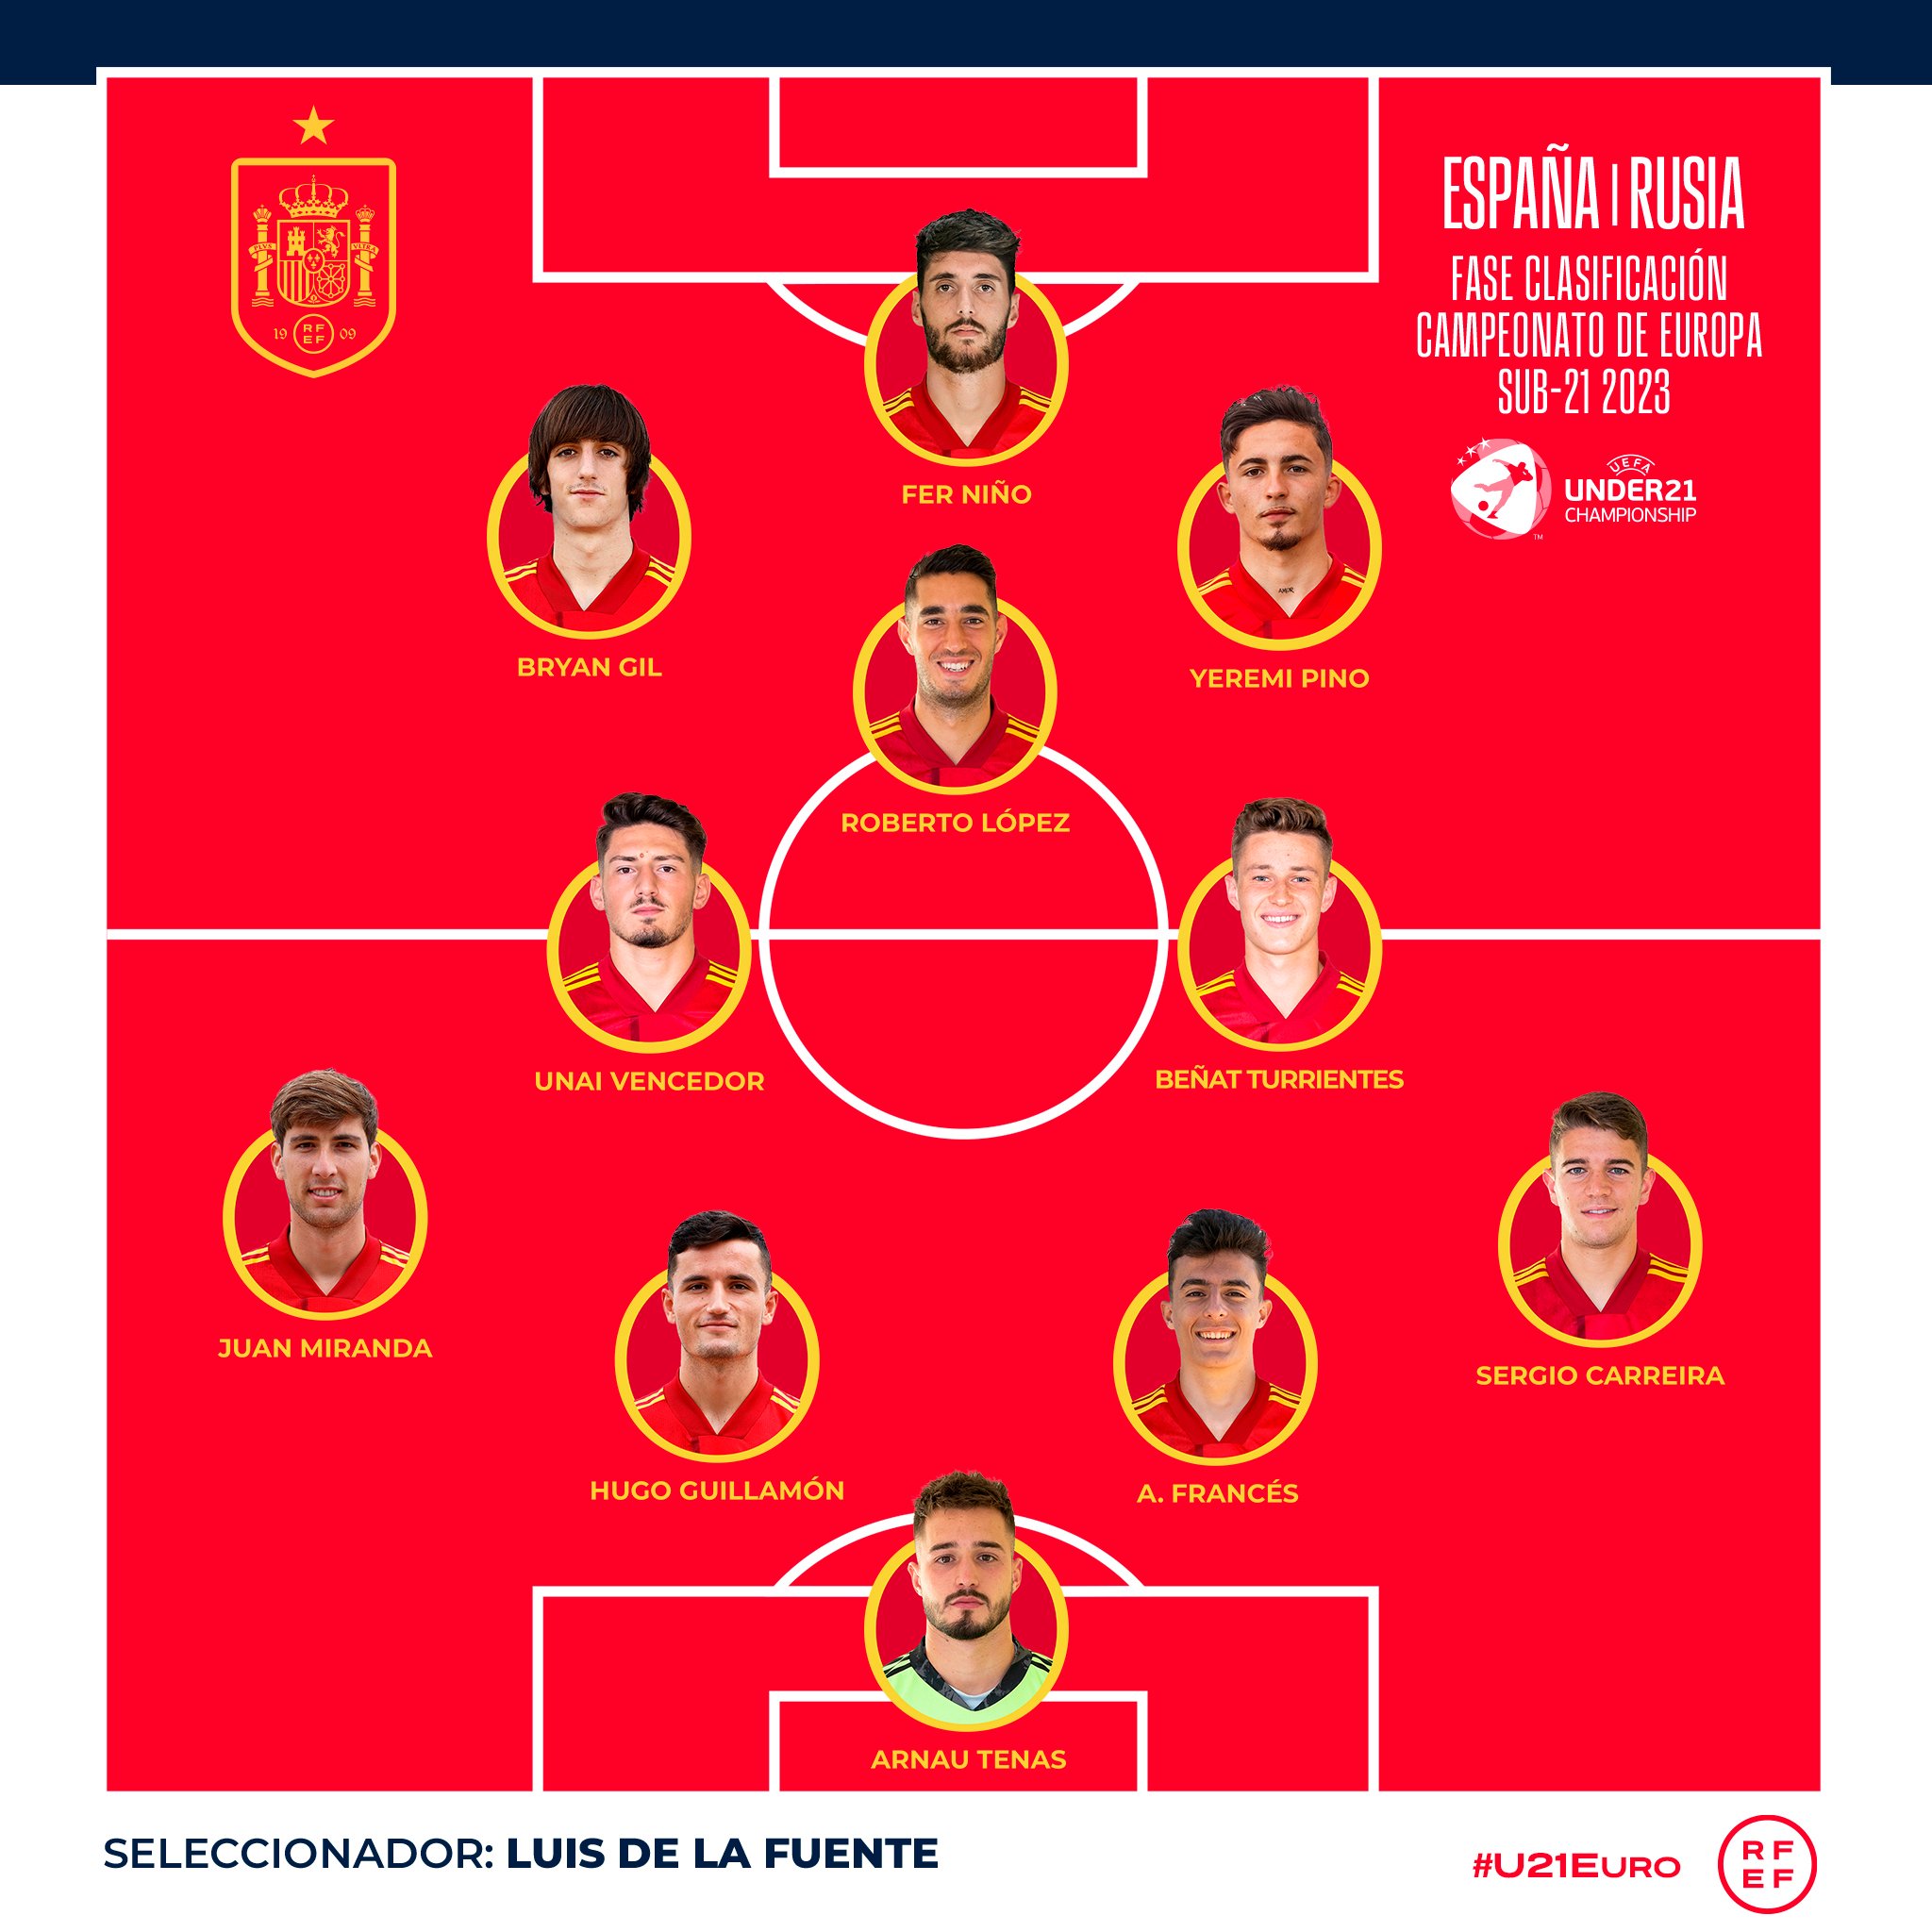 Selección Española de Fútbol on Twitter: "🙌🏽¡¡YA TENEMOS ONCE!!🙌🏽 👥 Estos son los internacionales elegidos por Luis de la Fuente para disputar primer encuentro de la Fase de clasificación de la #